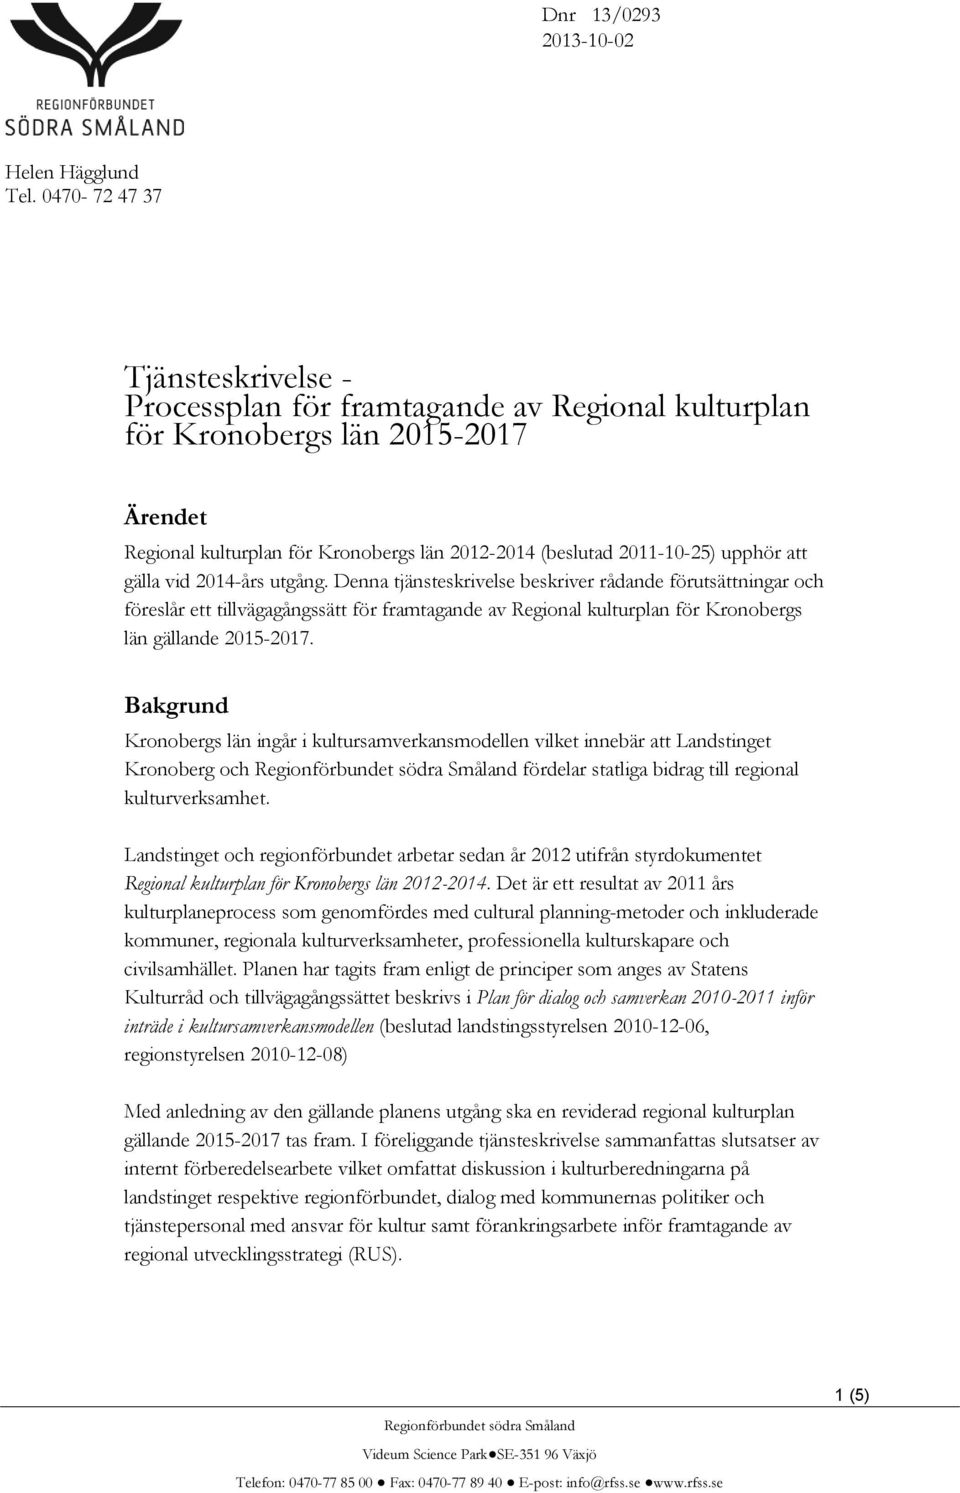 att gälla vid 2014-års utgång. Denna tjänsteskrivelse beskriver rådande förutsättningar och föreslår ett tillvägagångssätt för framtagande av Regional kulturplan för Kronobergs län gällande 2015-2017.